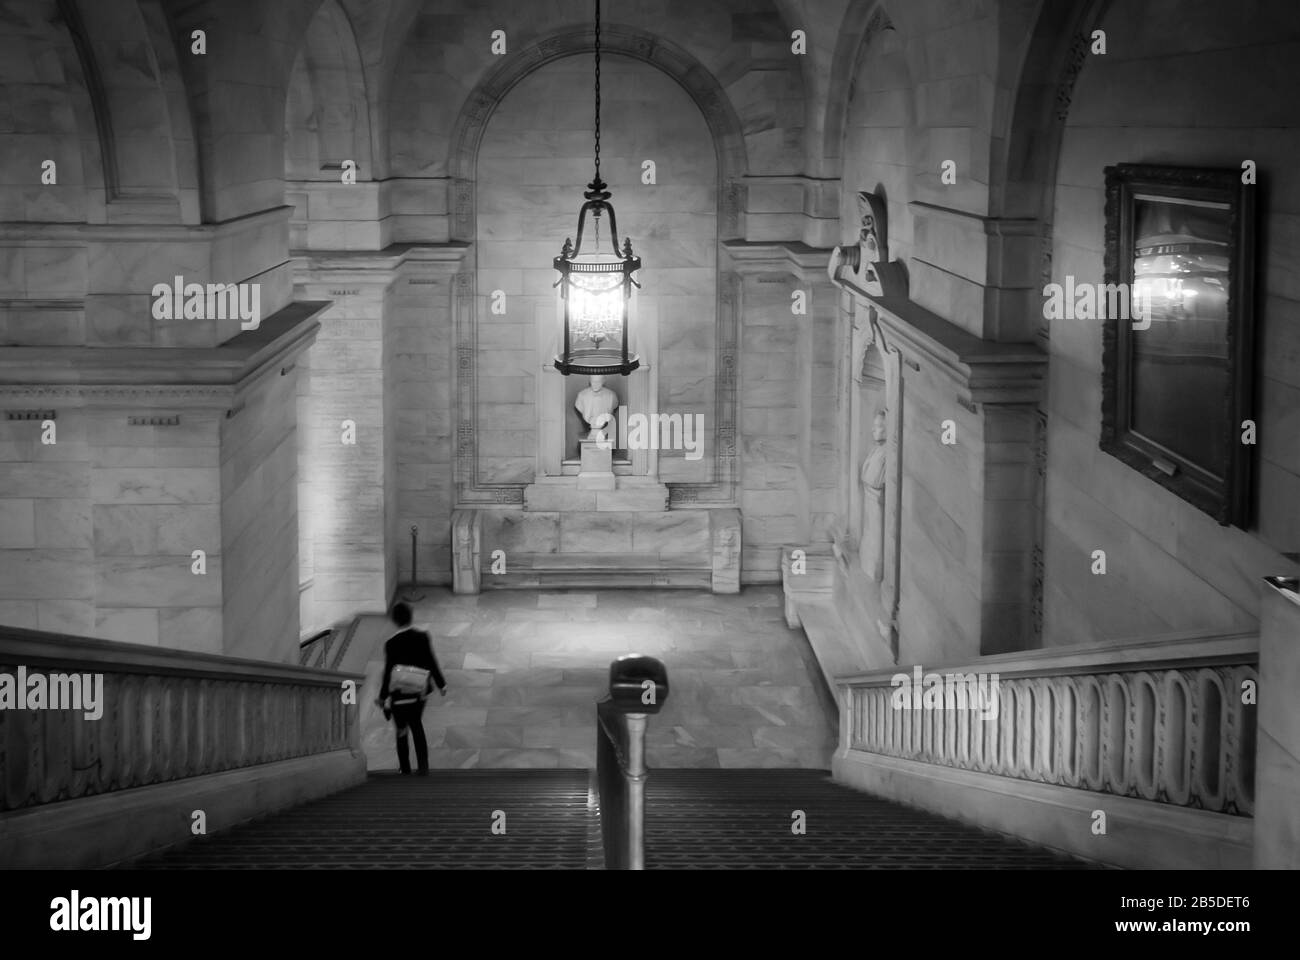 New York Public Library (NYPL) Treppe mit bewegter Person, die das Gebäude über die Treppe in Schwarzweiß verlässt. Stockfoto